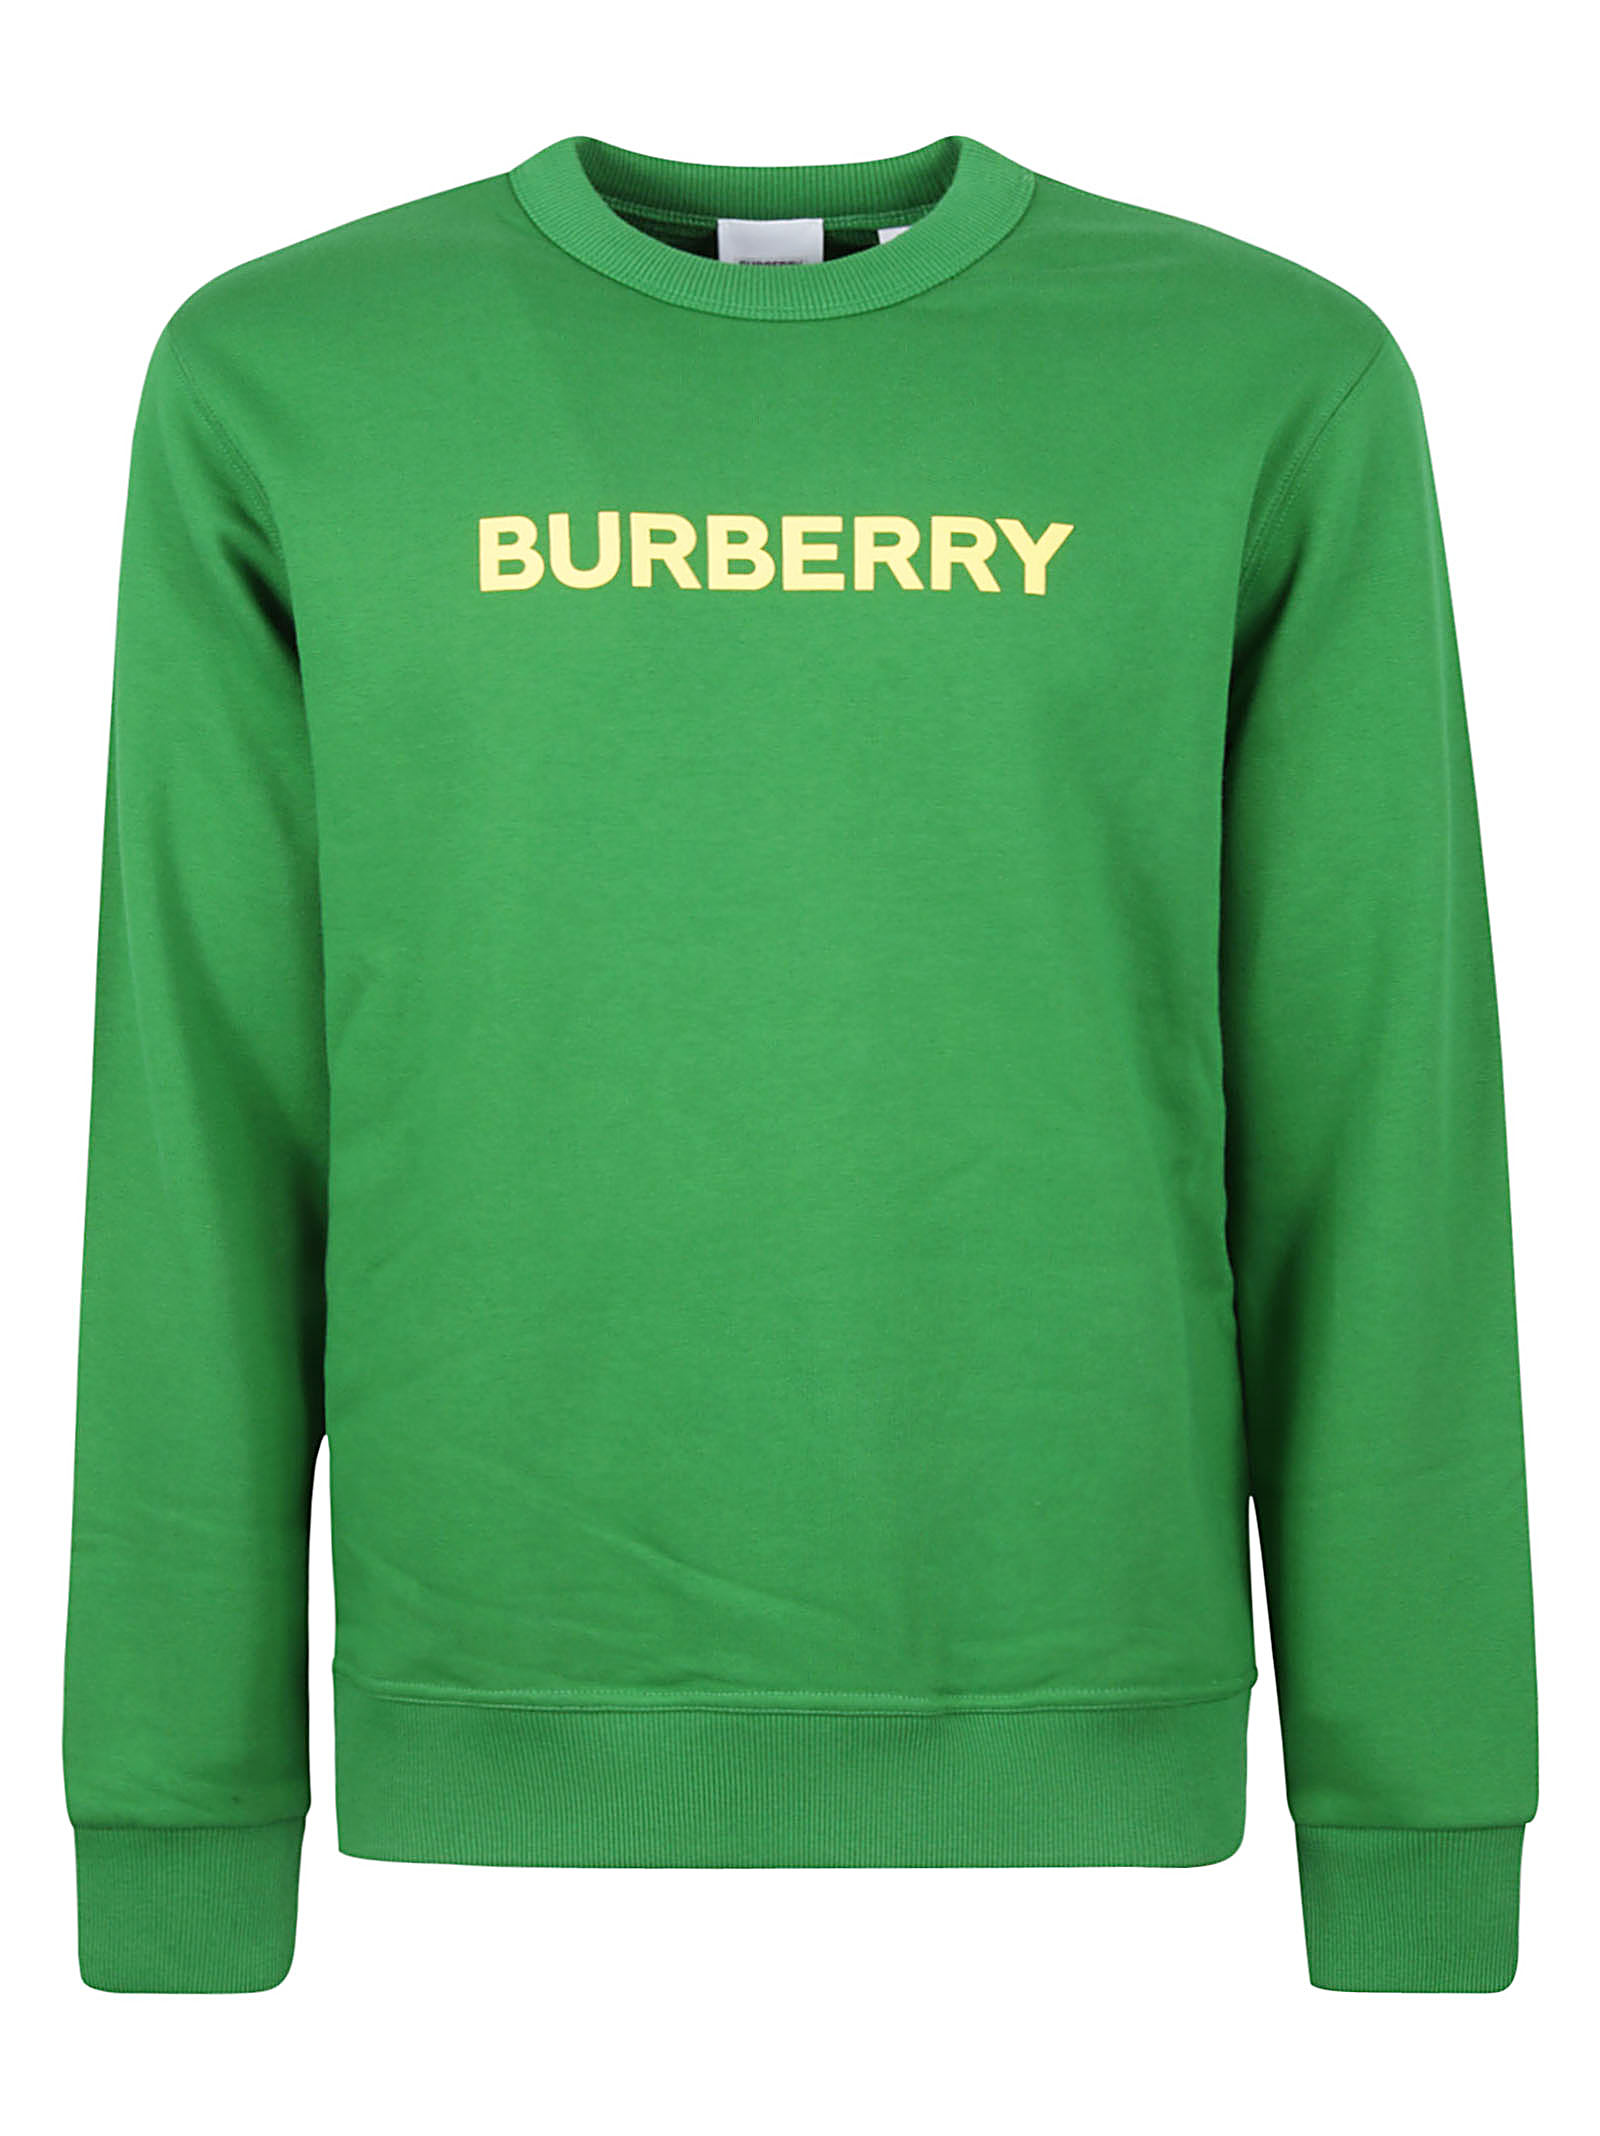 Burberry Burlow Crewneck Sweatshirt